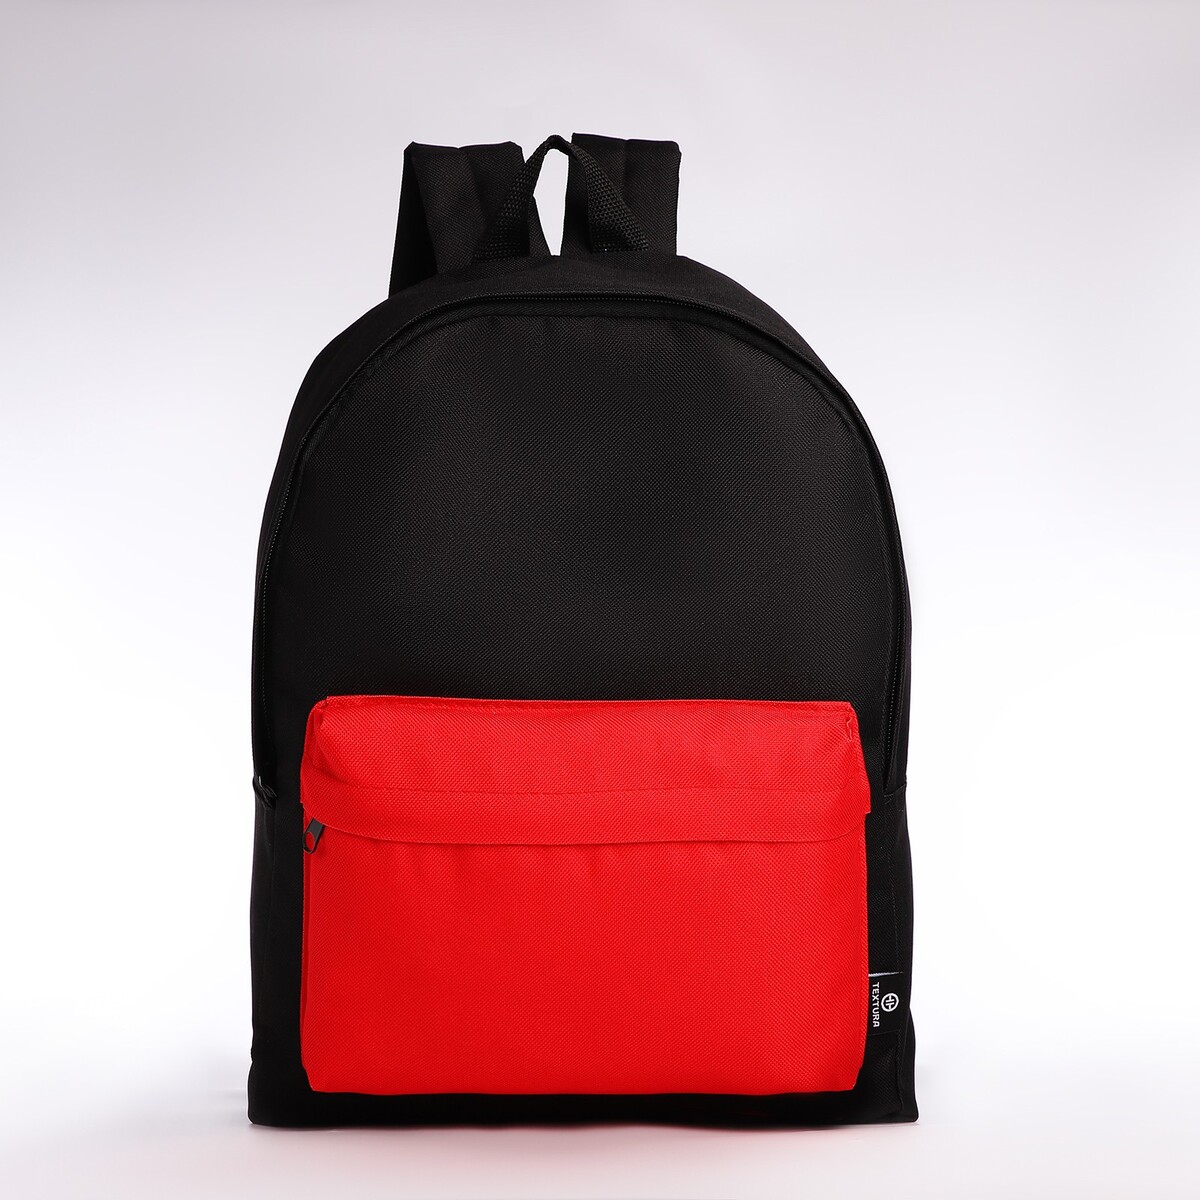 Спортивный рюкзак textura, 20 литров, цвет черный/красный рюкзак moleskine metro 15 красный